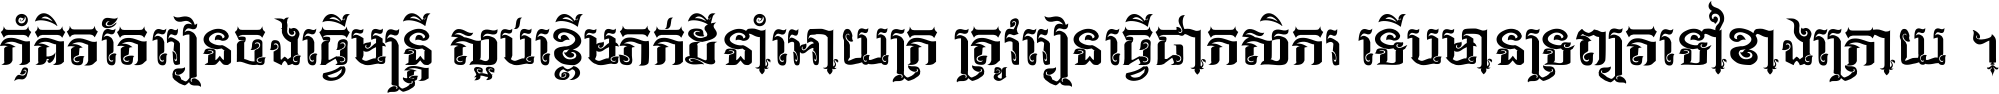 Khmer KngChakVS Kbach